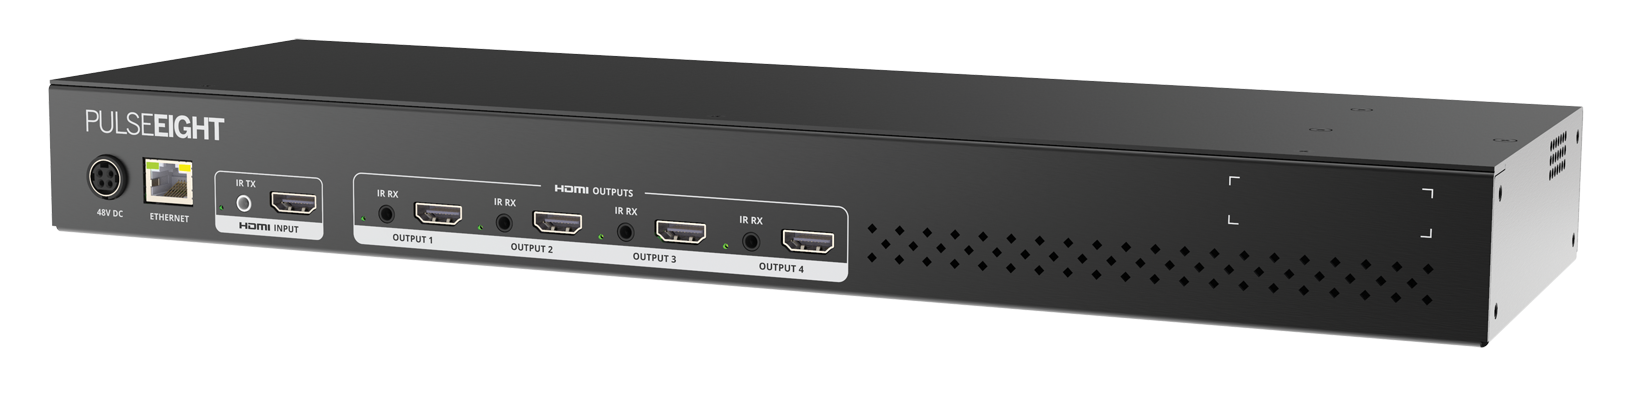 Ozvavzk 1x4 HDMI Splitter Support UHD 4K HDMI 1.4 3D 1080P Full HD 1 in 4 uscite 4 Way HDMI Distributore 1 su 4